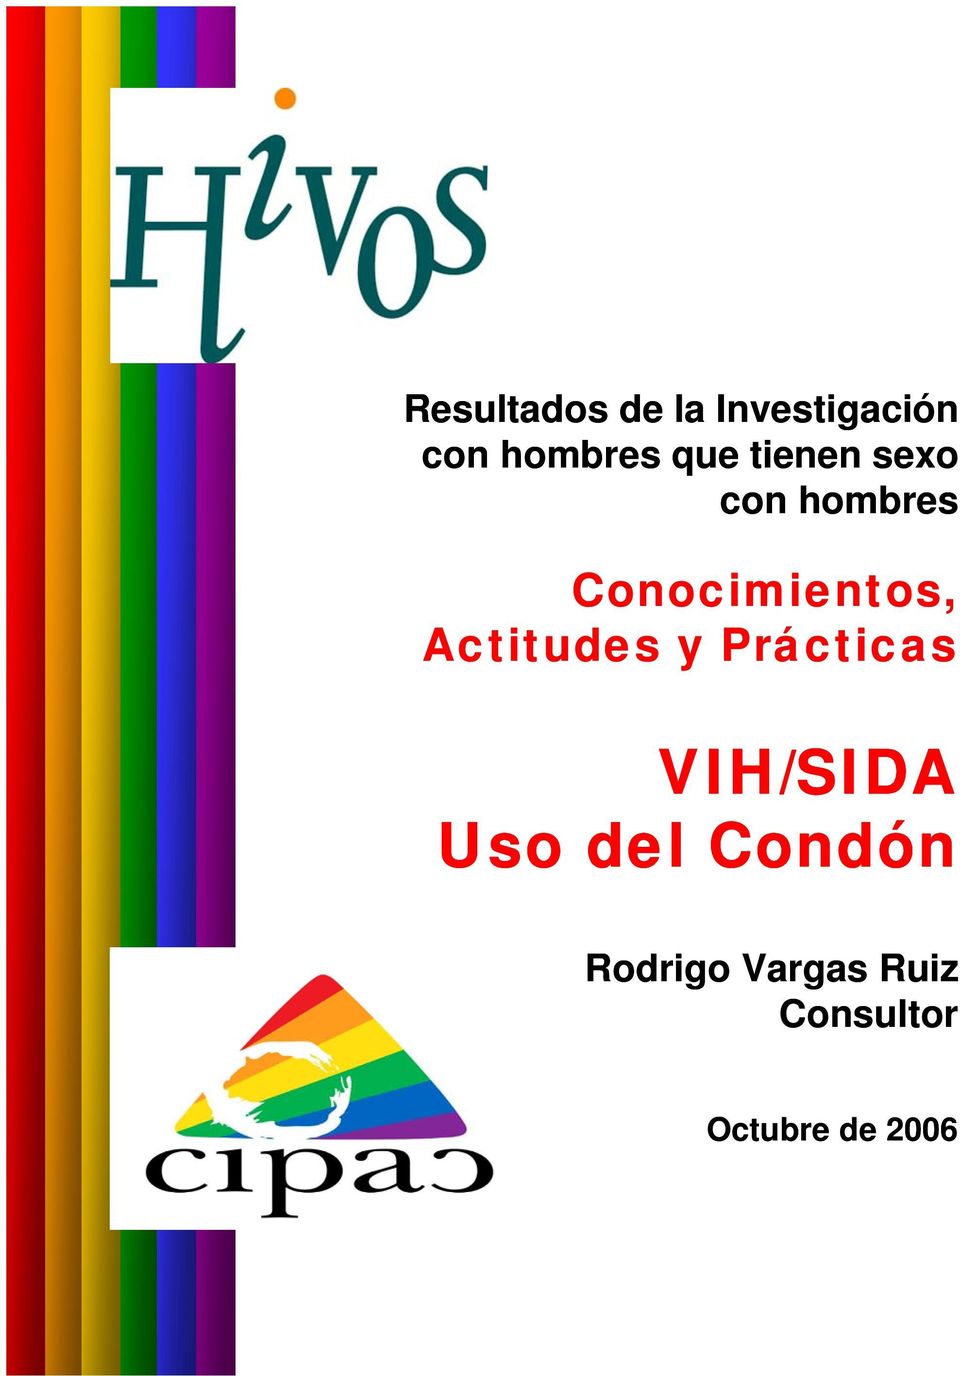 Actitudes y Prácticas VIH/SIDA Uso del